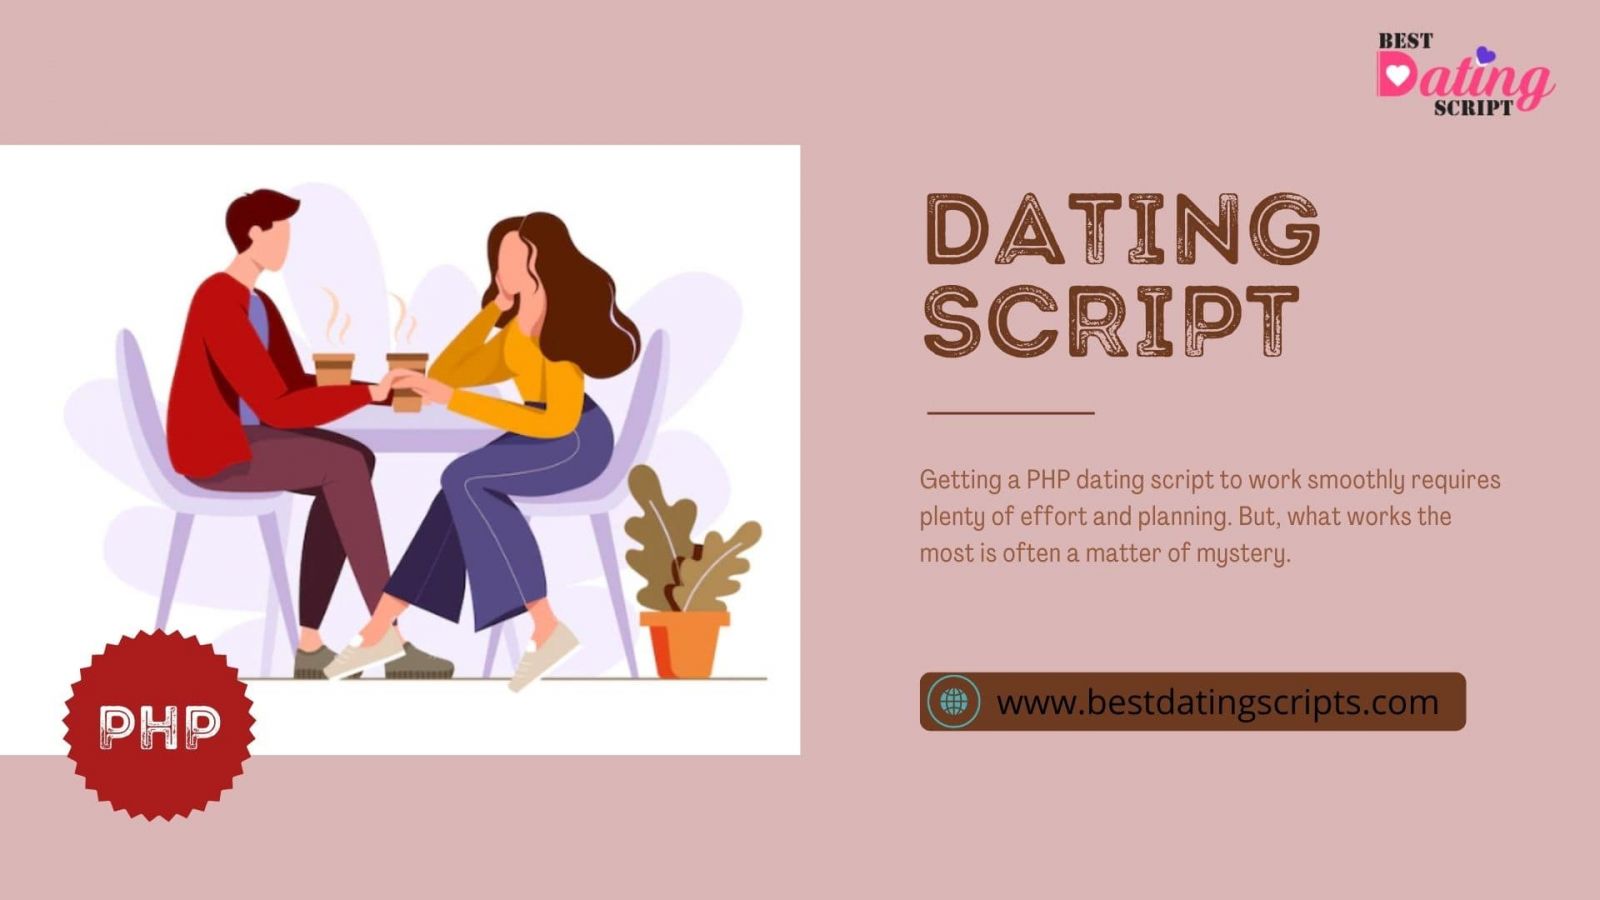 Open Source Dating Script